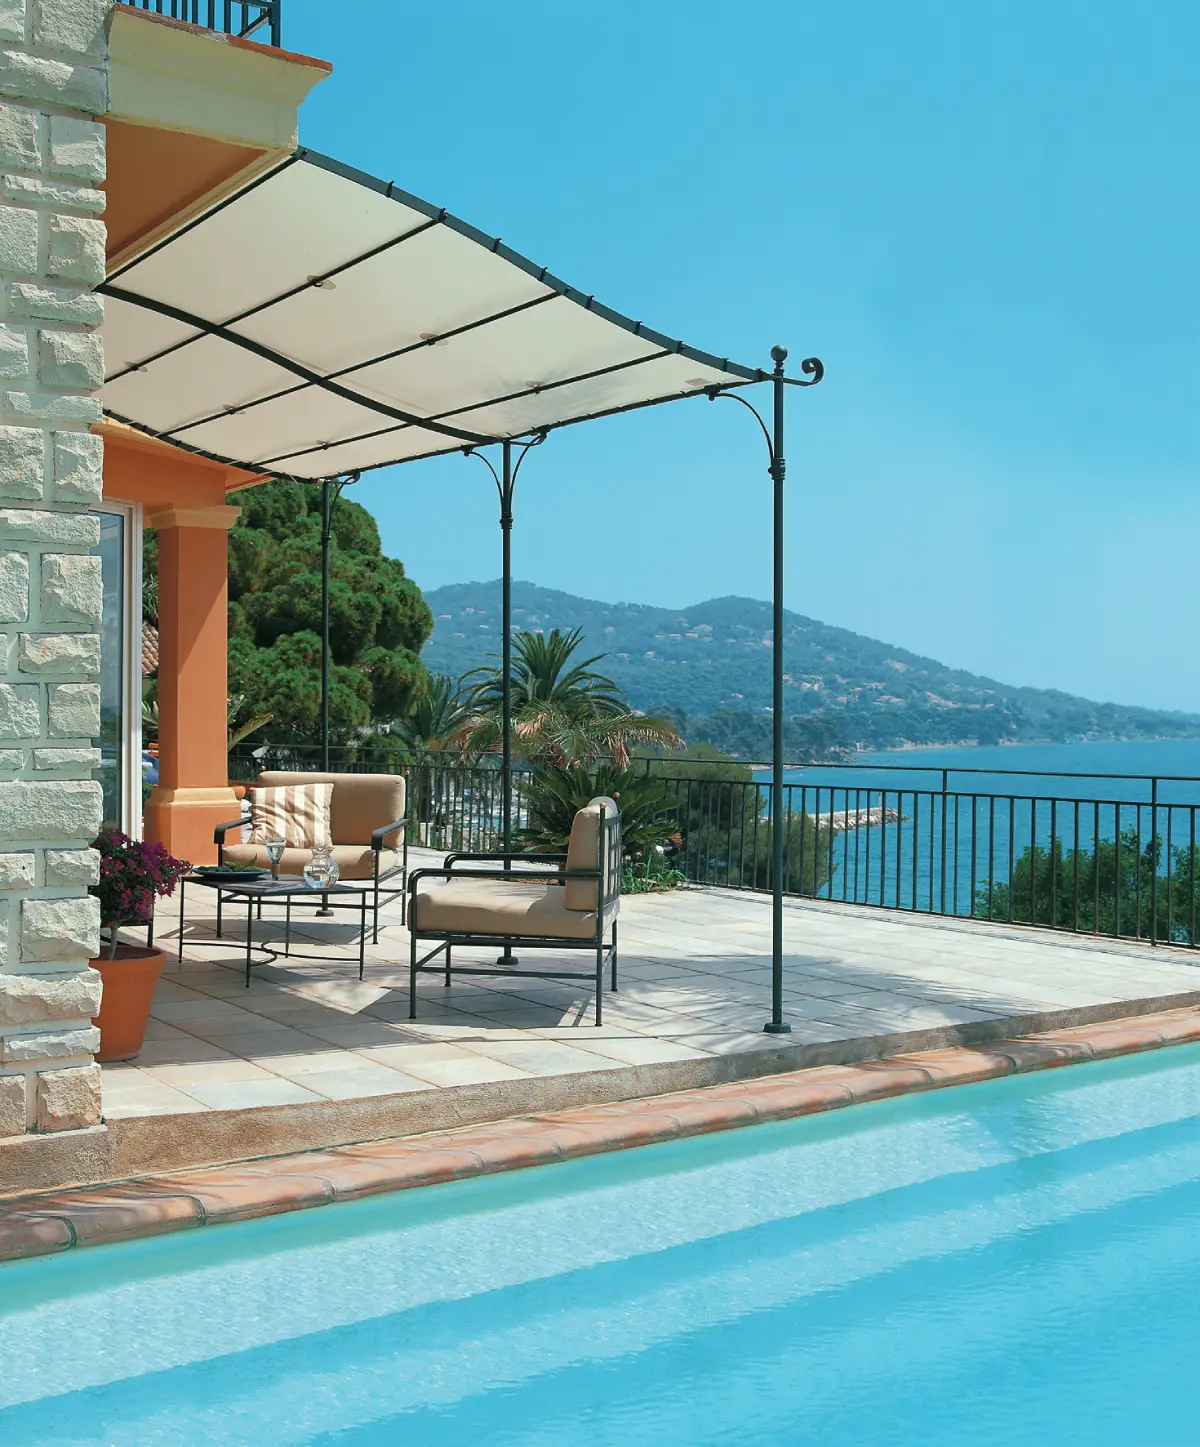 Pergola style méditerranéen, fer et toile, à côté de la piscine